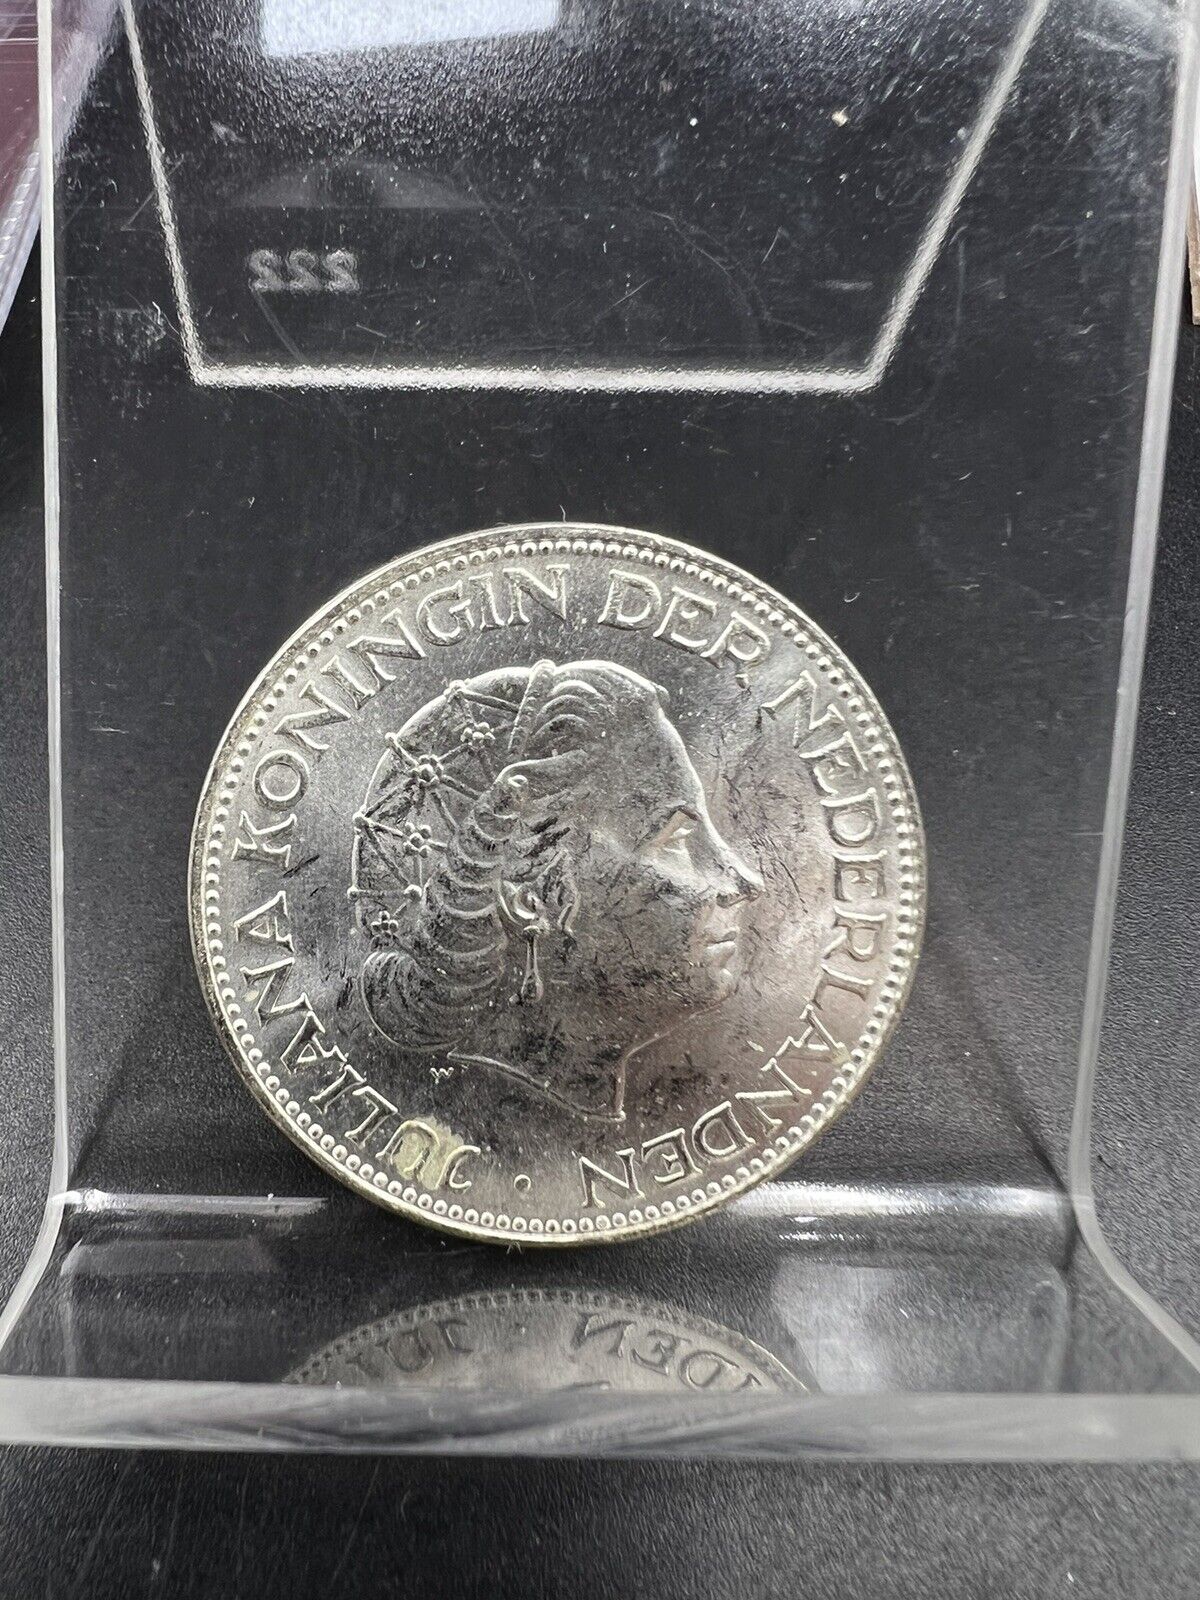 1966 Netherlands 2 1/2 Gulden BU KM-185 BU UNC